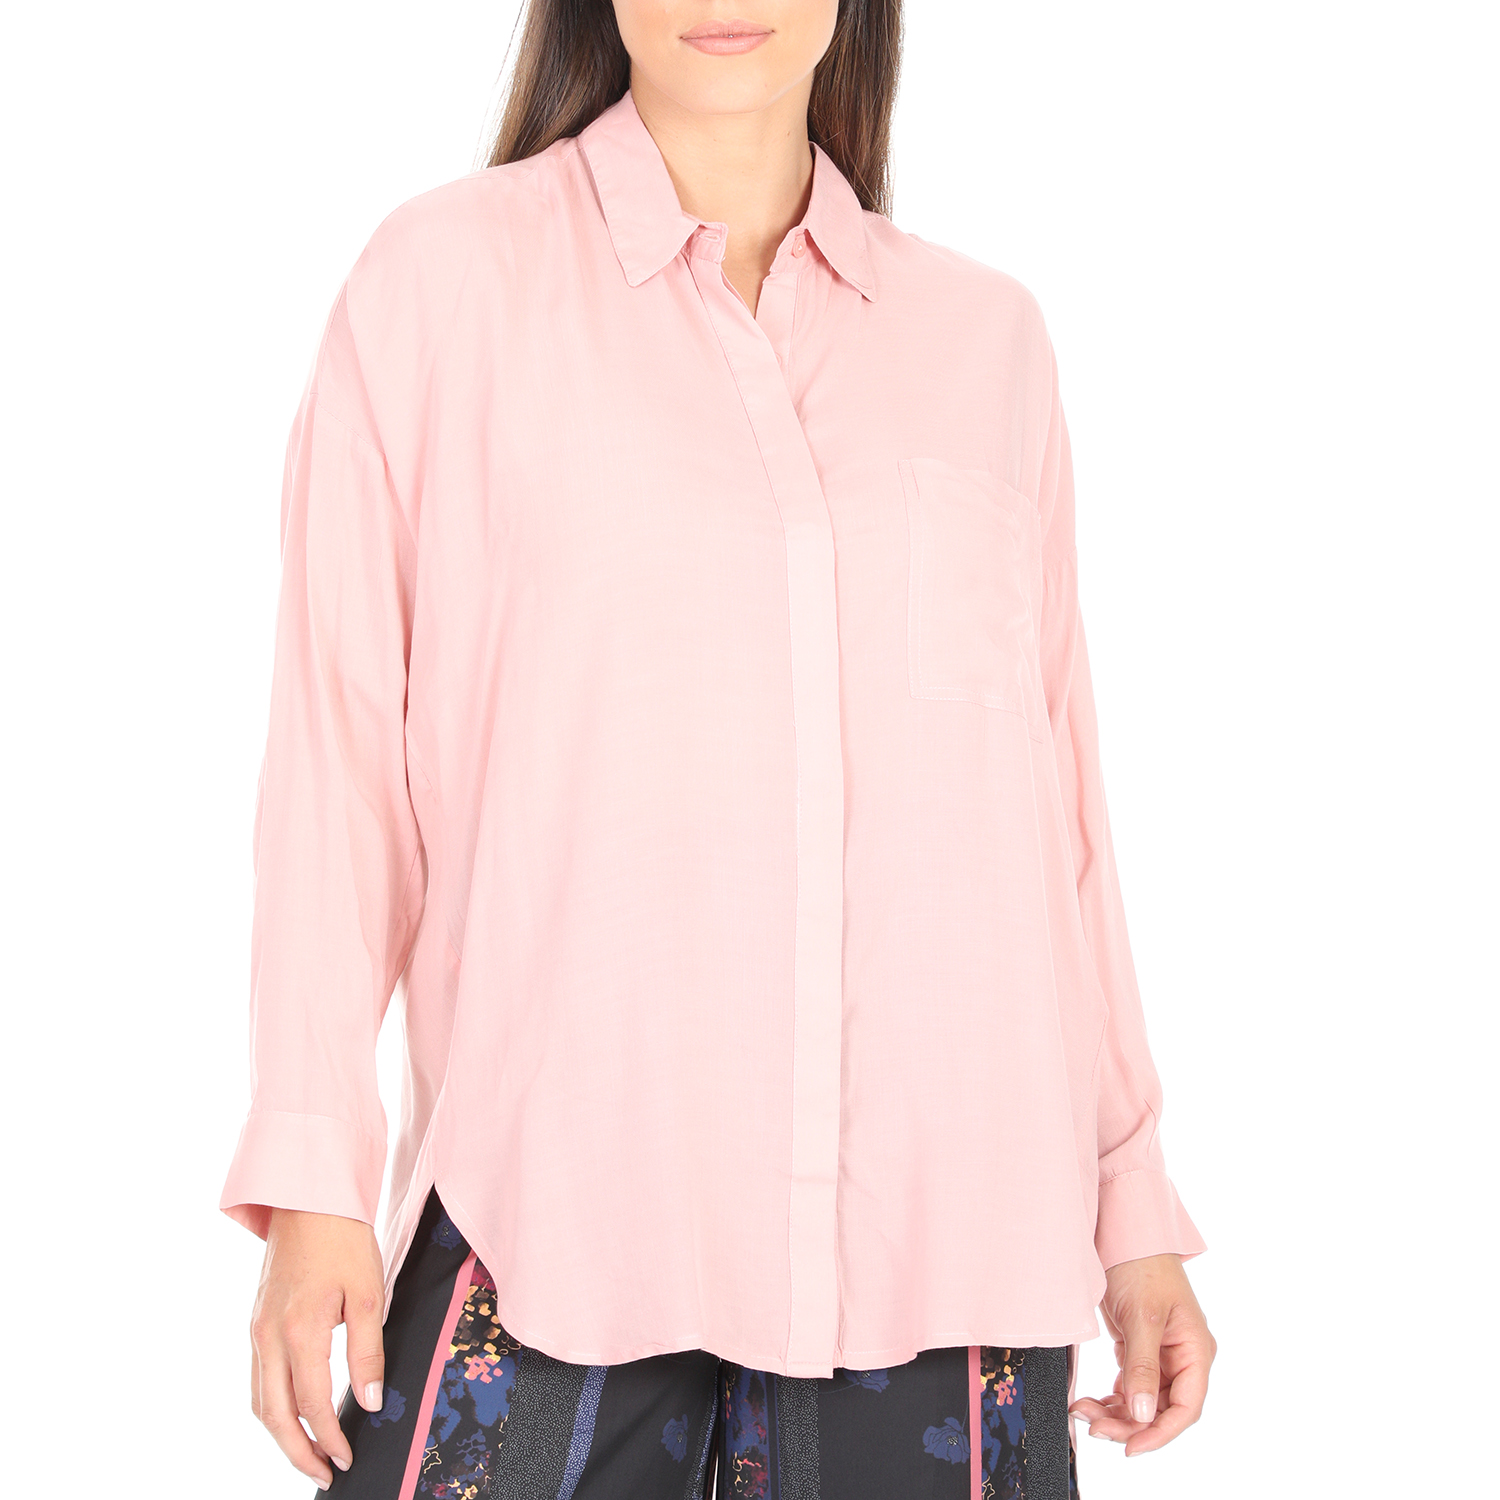 'ALE - Γυναικεία πουκαμίσα 'ALE ροζ Γυναικεία/Ρούχα/Πουκάμισα/Μακρυμάνικα